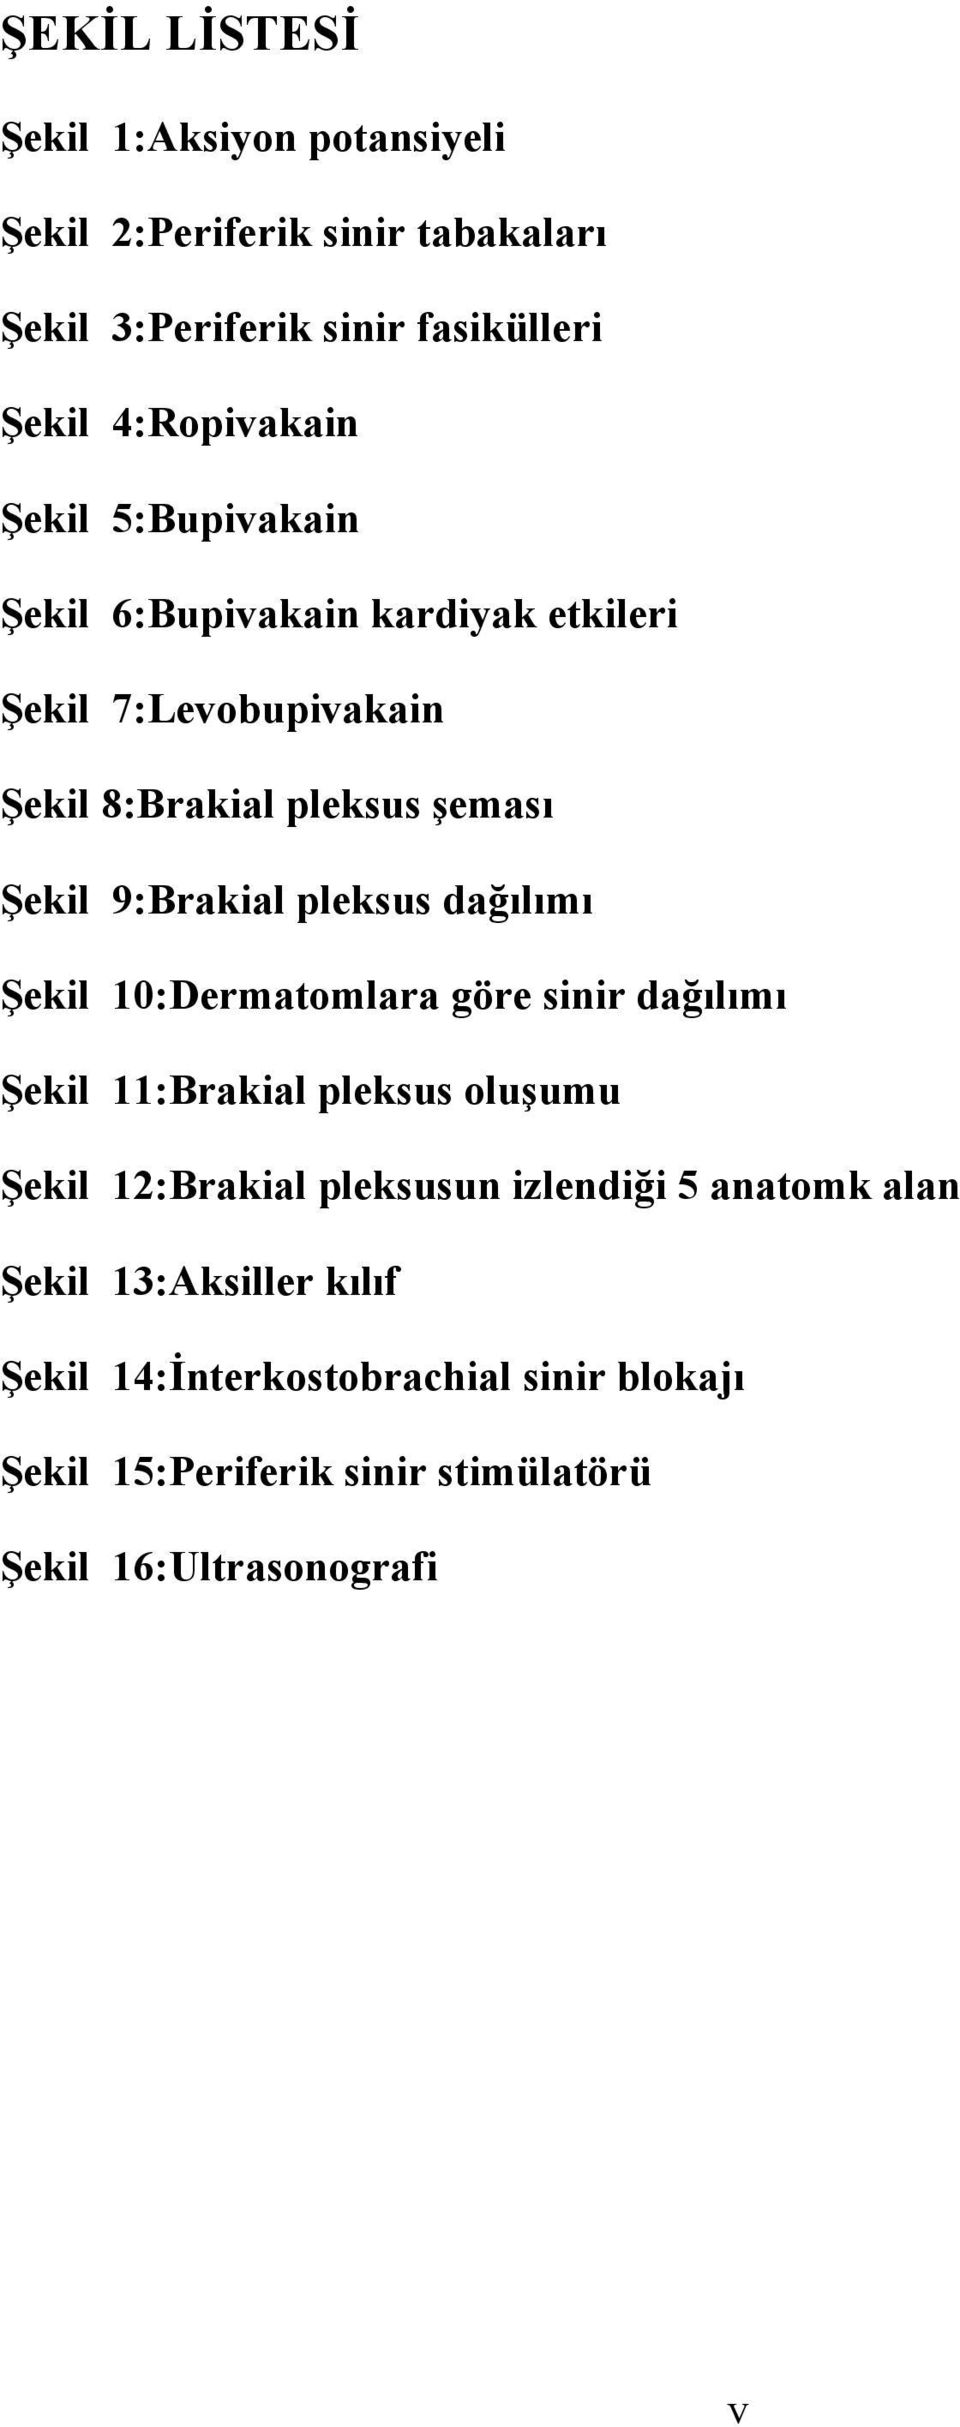 pleksus dağılımı Şekil 10:Dermatomlara göre sinir dağılımı Şekil 11:Brakial pleksus oluşumu Şekil 12:Brakial pleksusun izlendiği 5